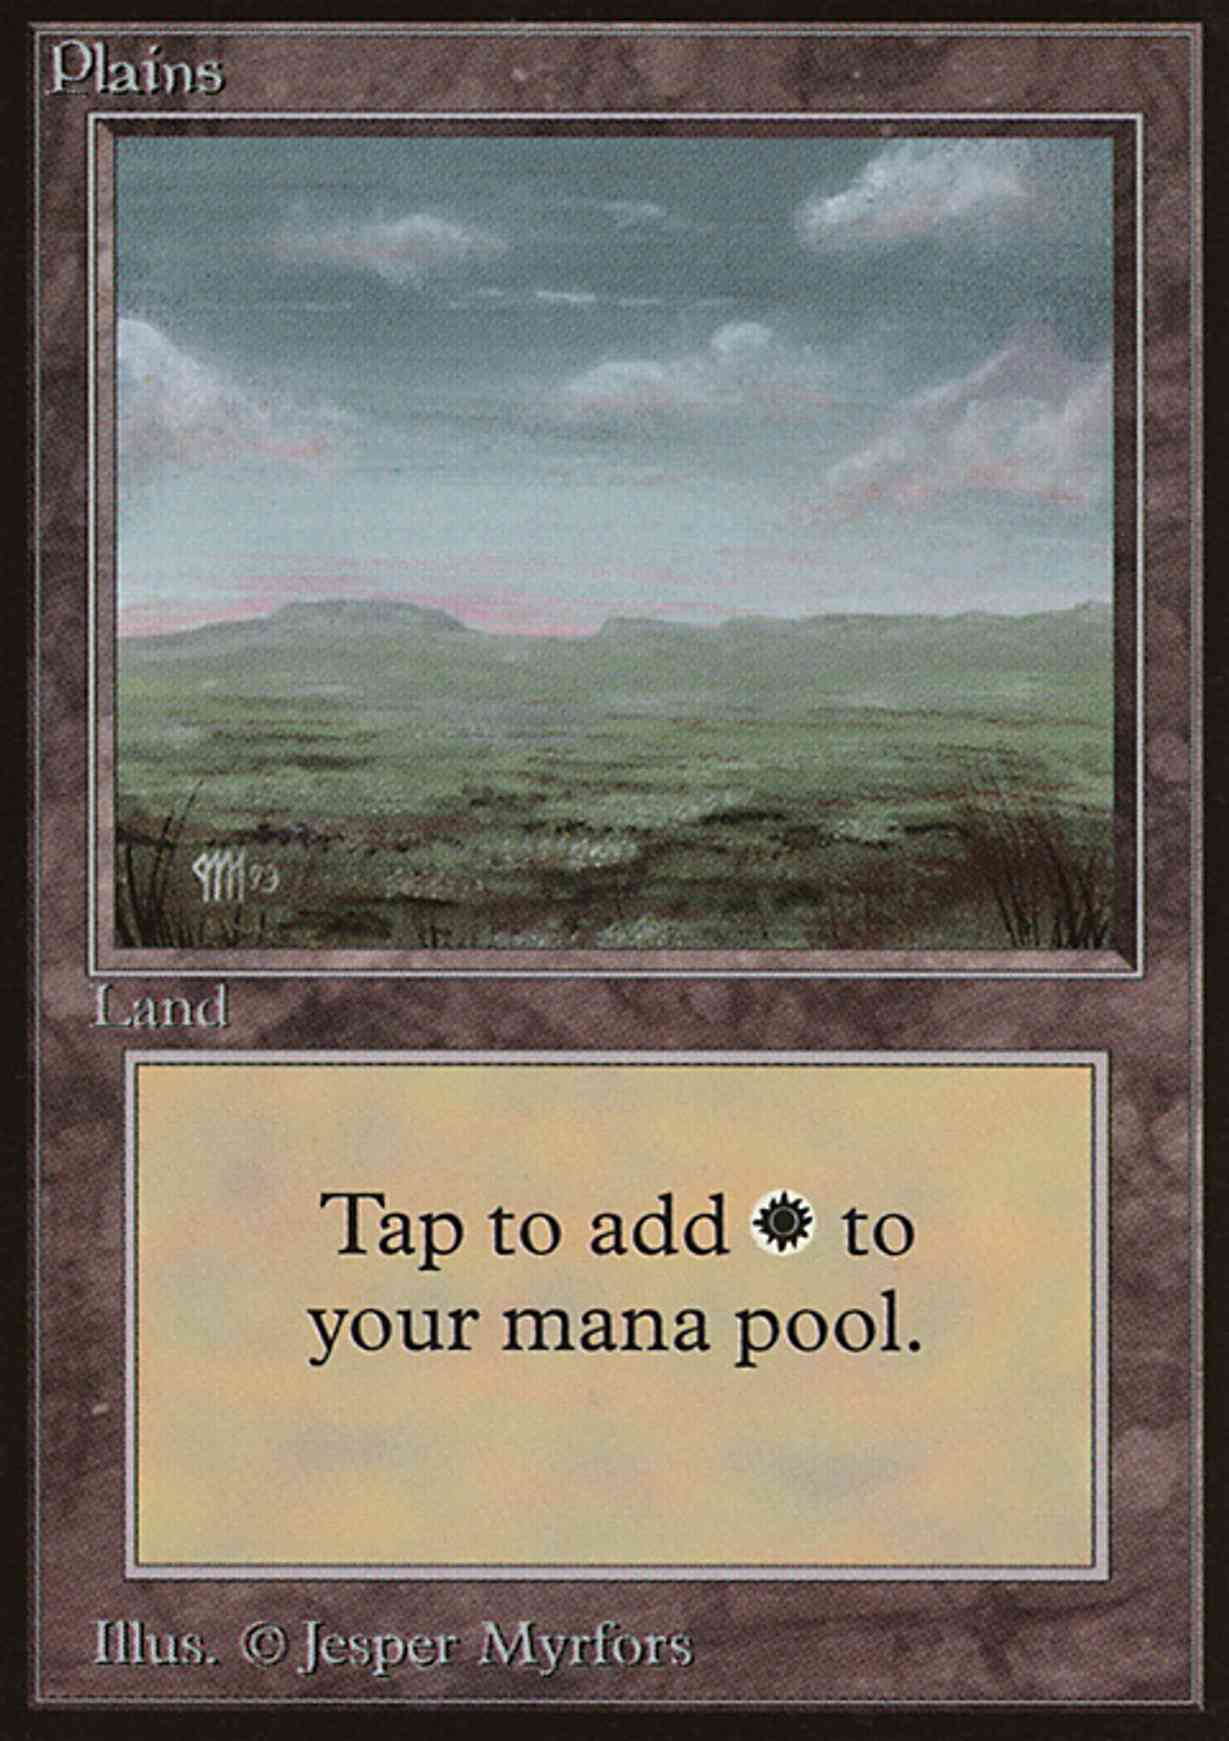 Plains (C) magic card front